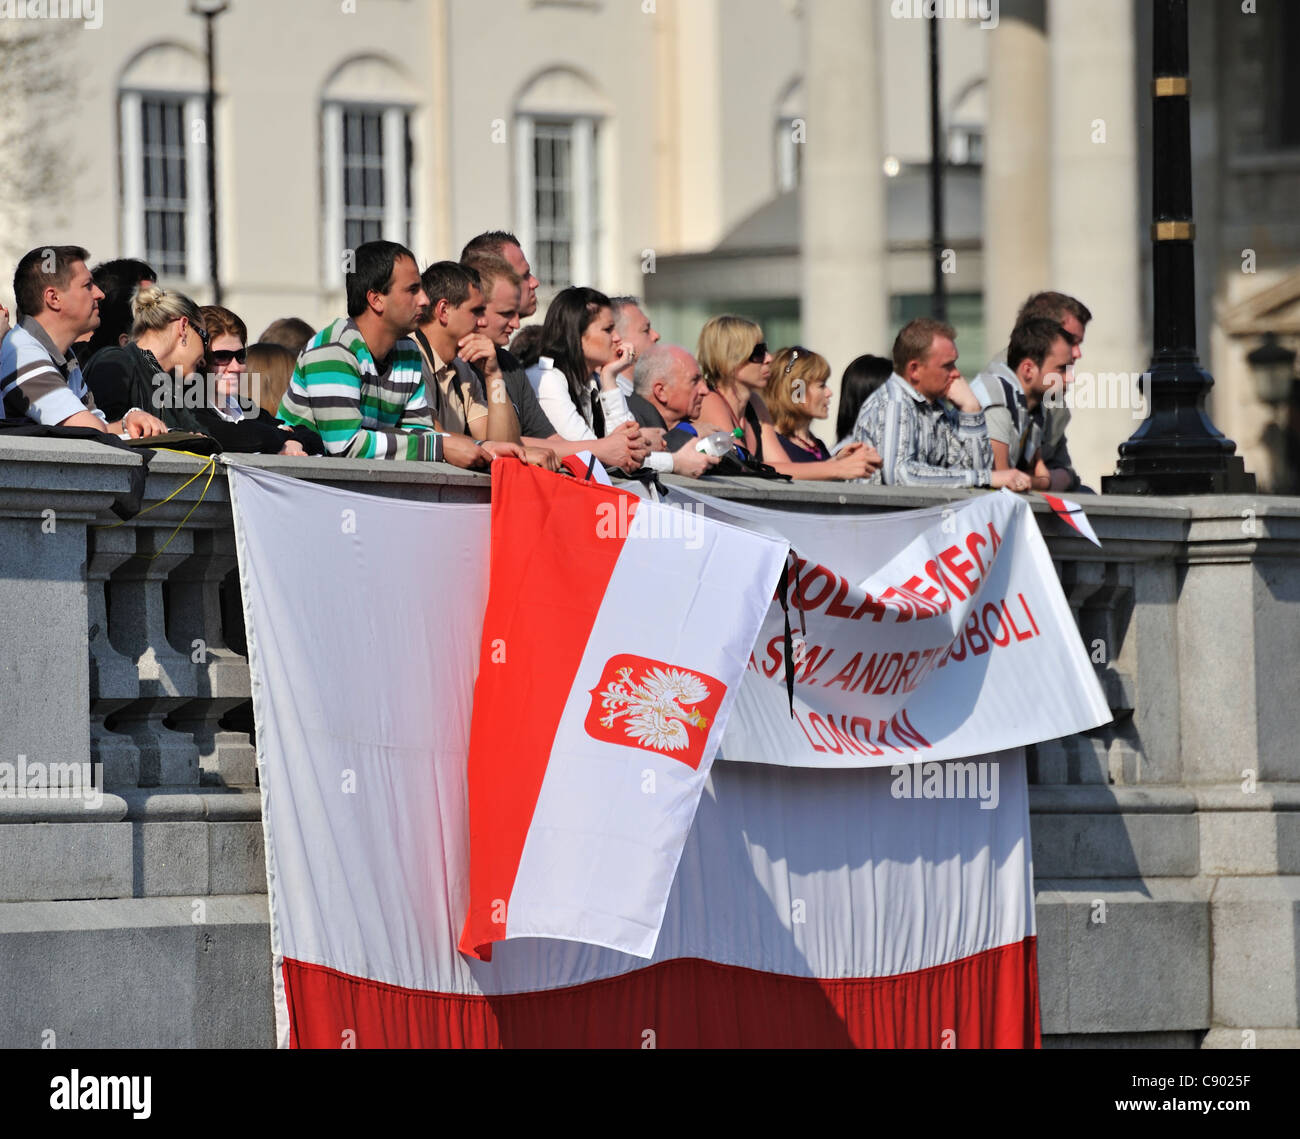 Les gens se sont réunis pour assister aux funérailles du président polonais Lech Kaczynski sur ses écrans de télévision, avril 2010, Trafalgar Square, Londres, UK Banque D'Images